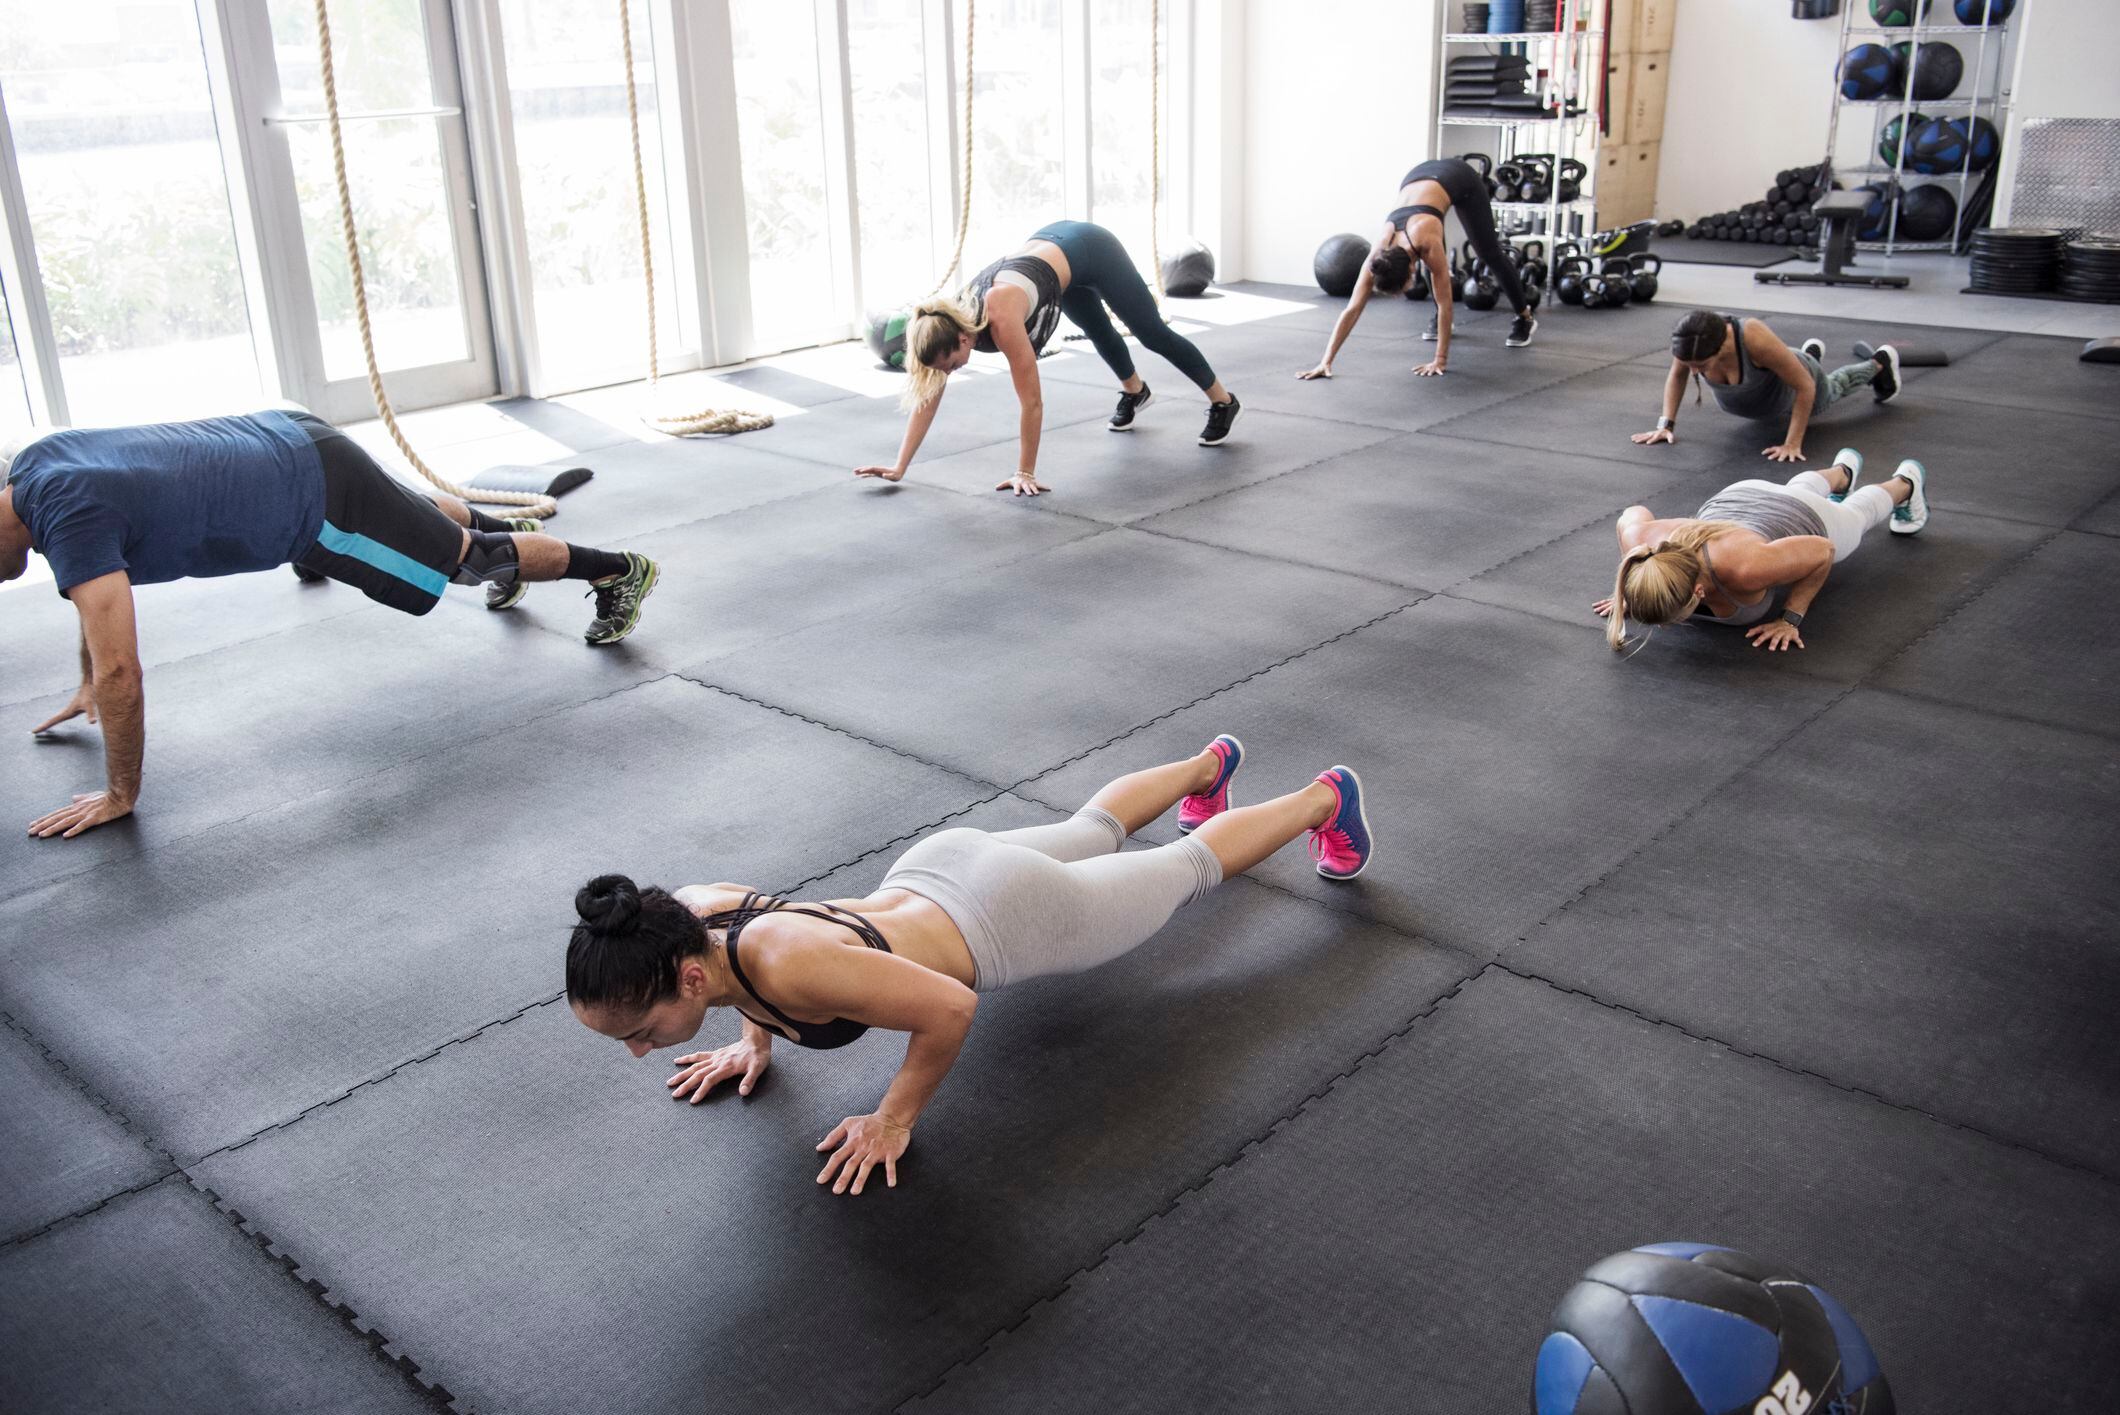 Personas realizando flexiones conjuntamente en el gimnasio (Getty Images)